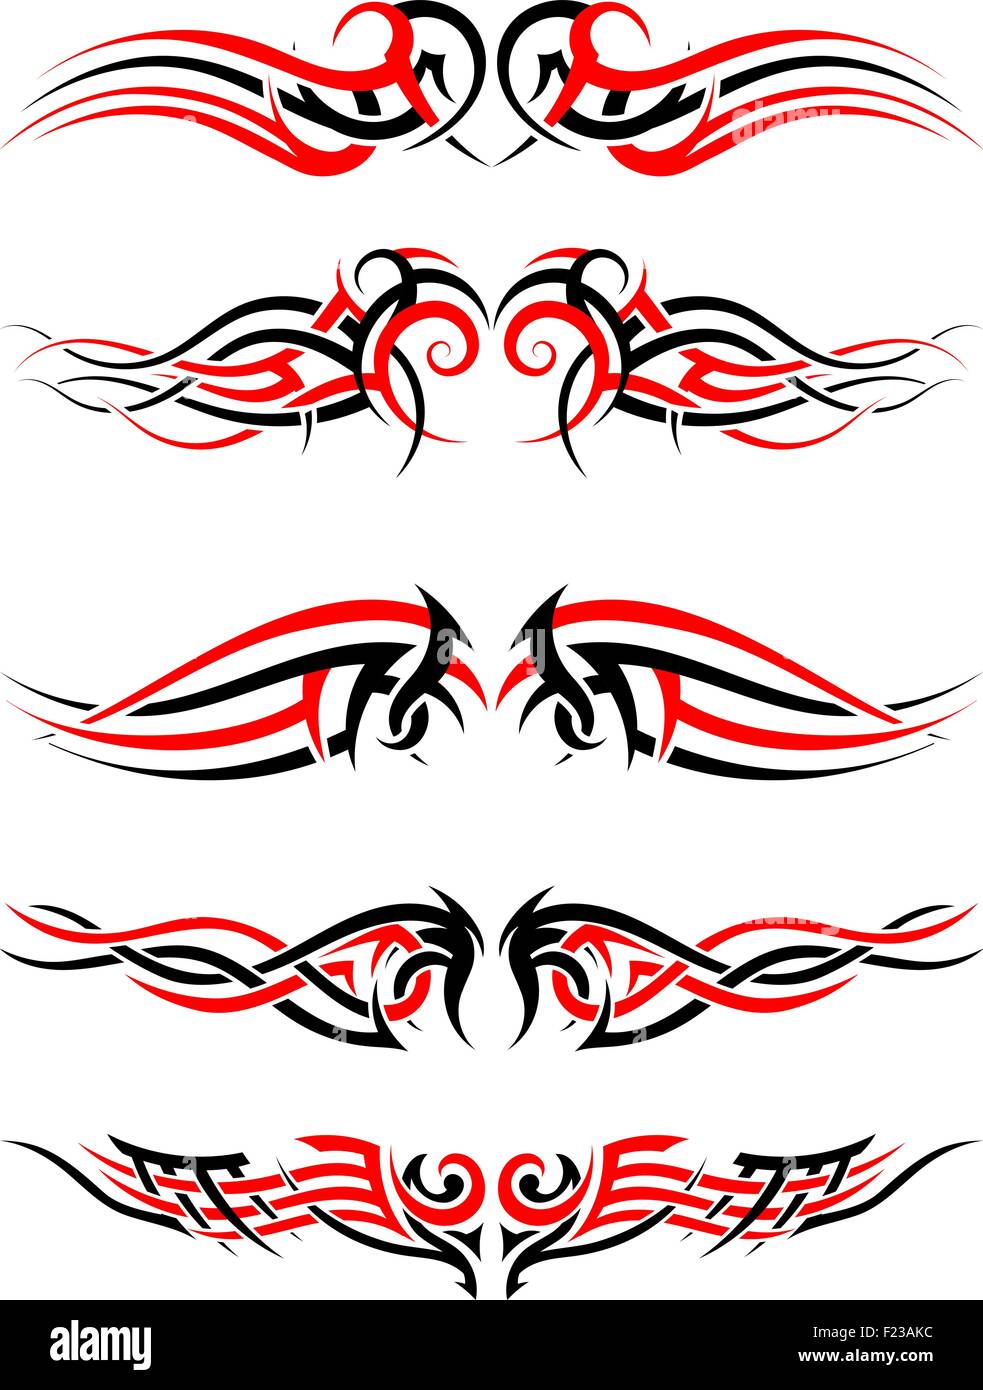 Ensemble de tatouages autochtones tribales en noir et rouge. Conception souple élégante sur fond blanc. Vector Illustration. Illustration de Vecteur